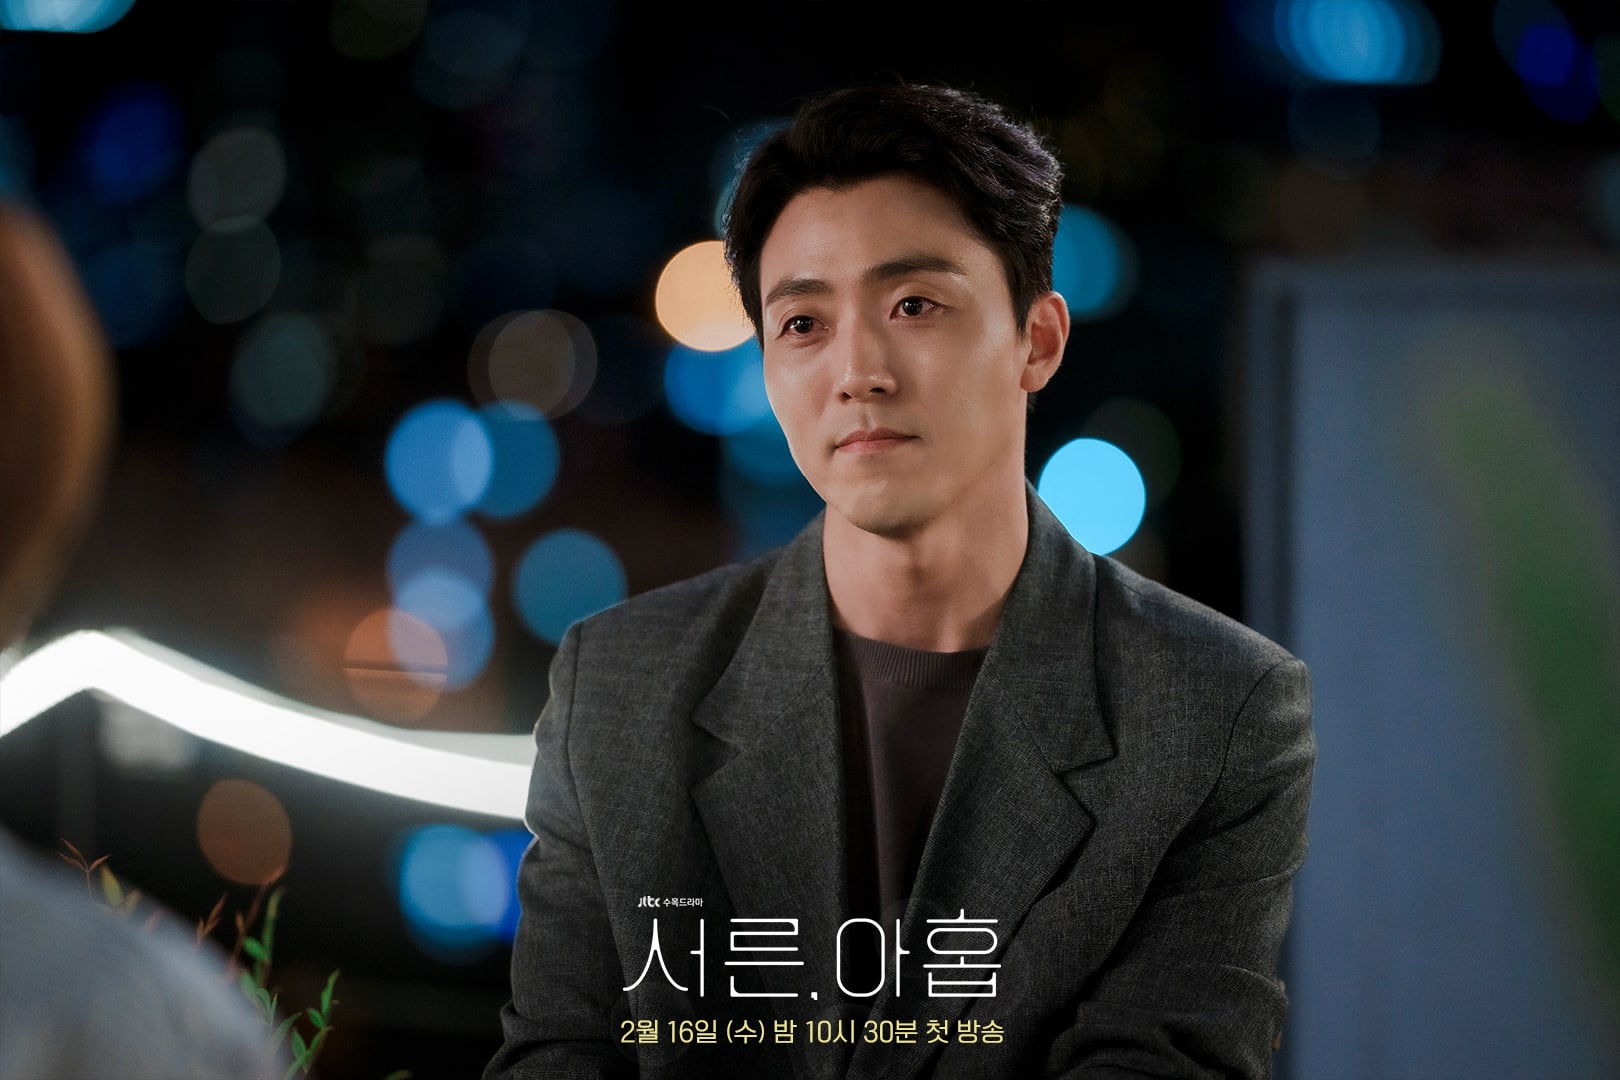 phim 39 Lee Moo Saeng vai Kim Jin Seok - 39: Phim tâm lý về cuộc đời người phụ nữ trước ngưỡng tuổi 40